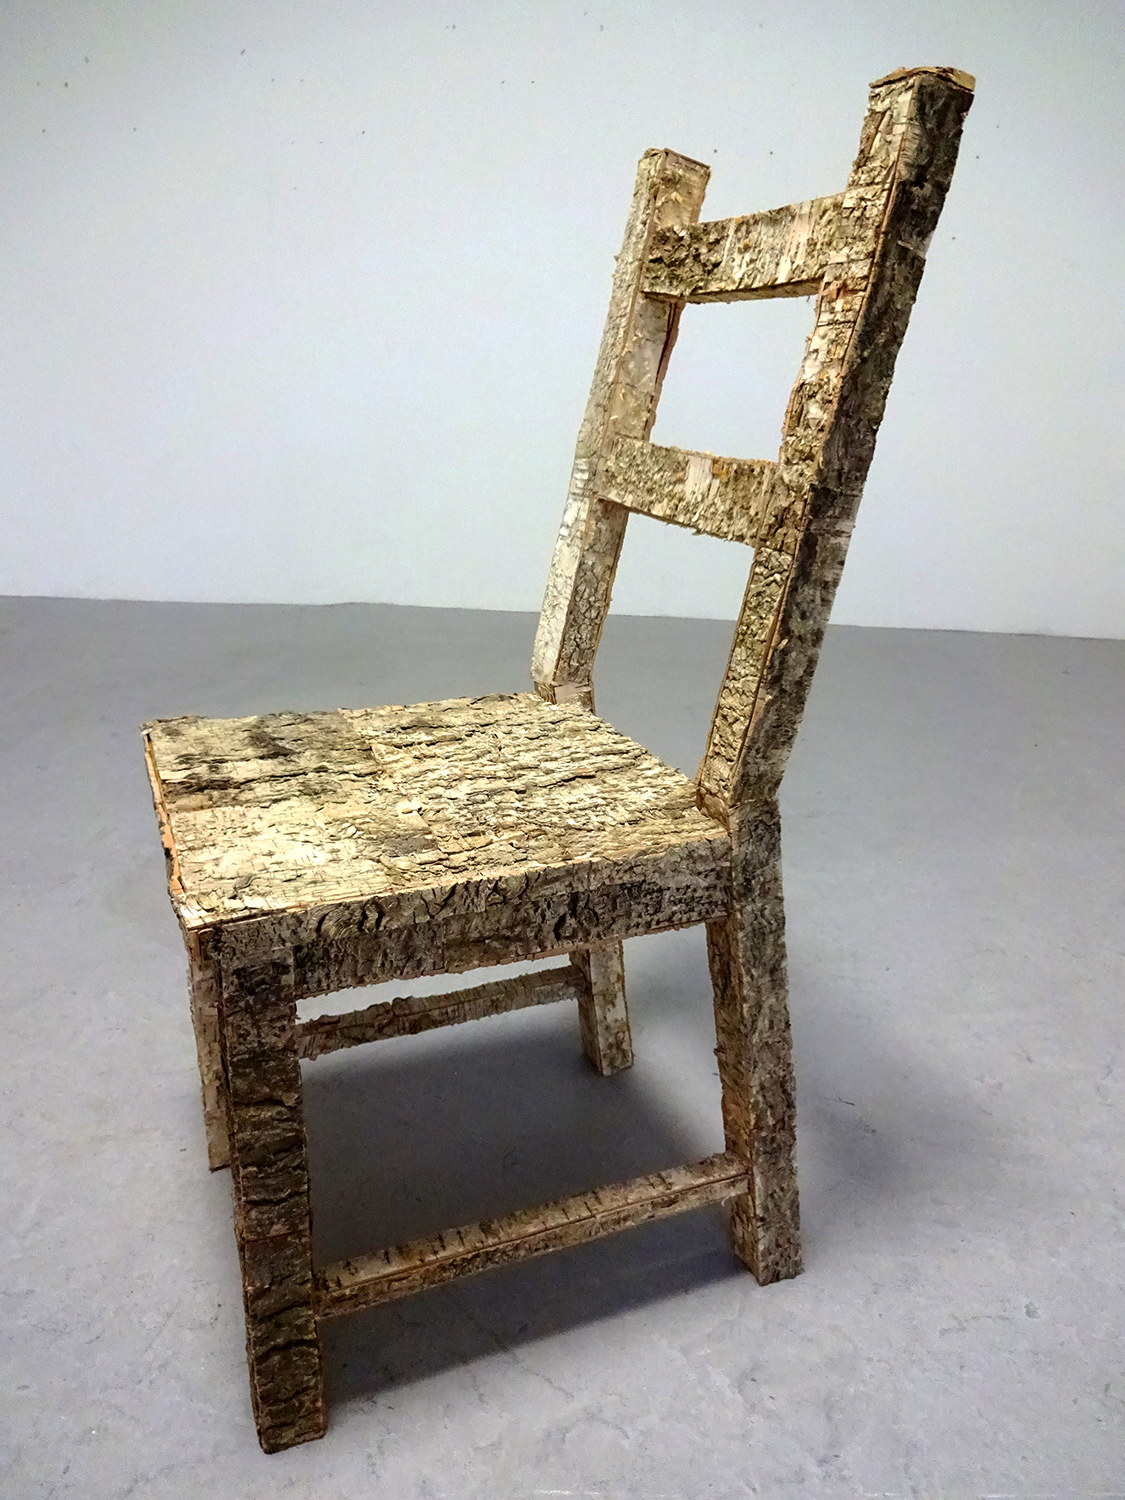 Chair sculpture